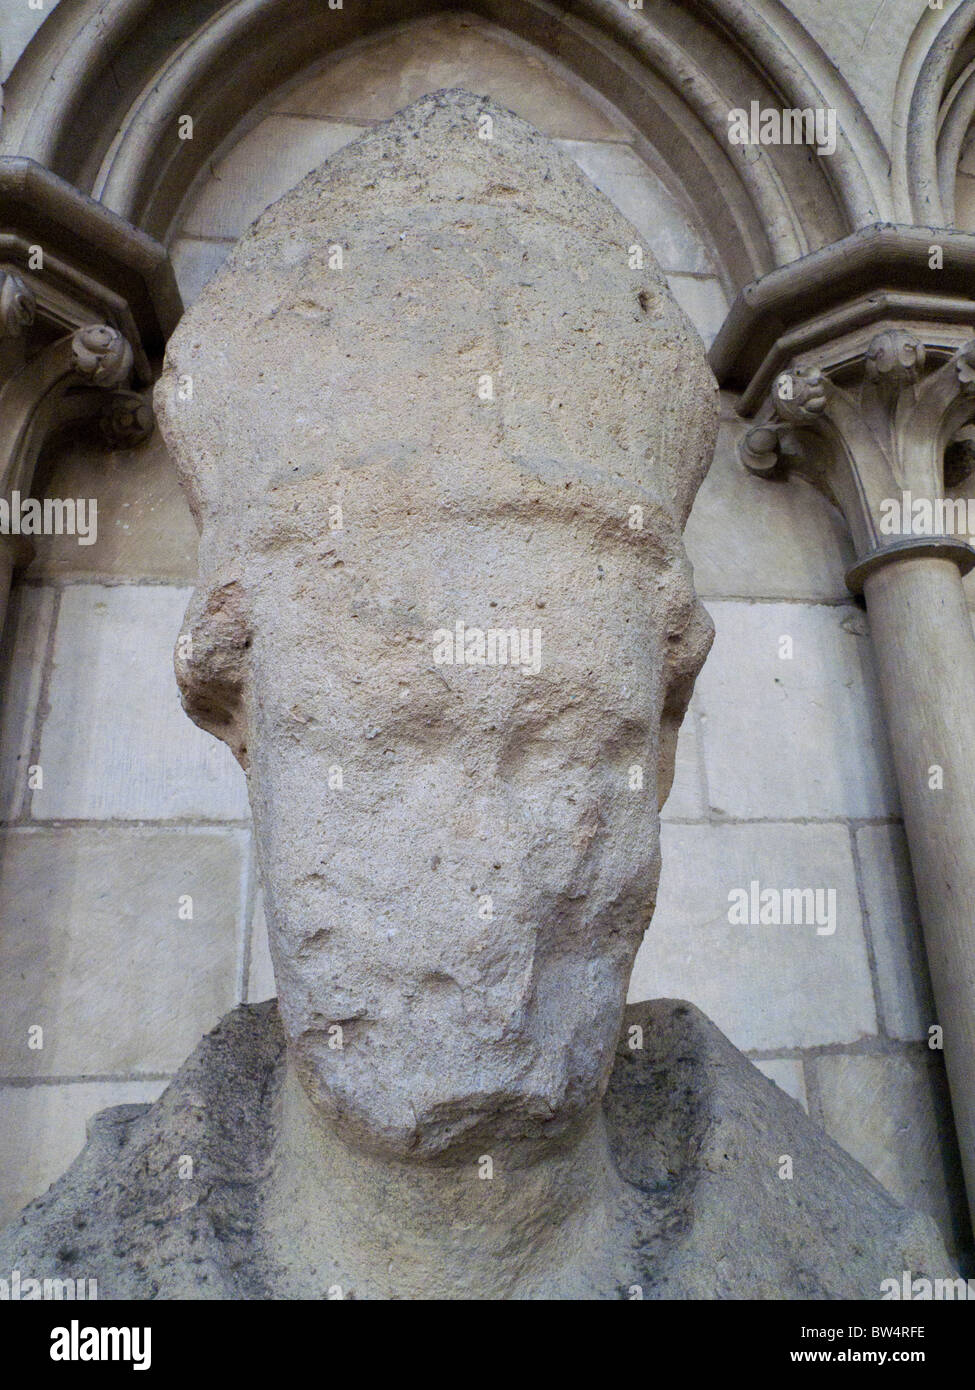 Sculptures érodées de St Romain dans la Cathédrale de Rouen Normandie France Banque D'Images